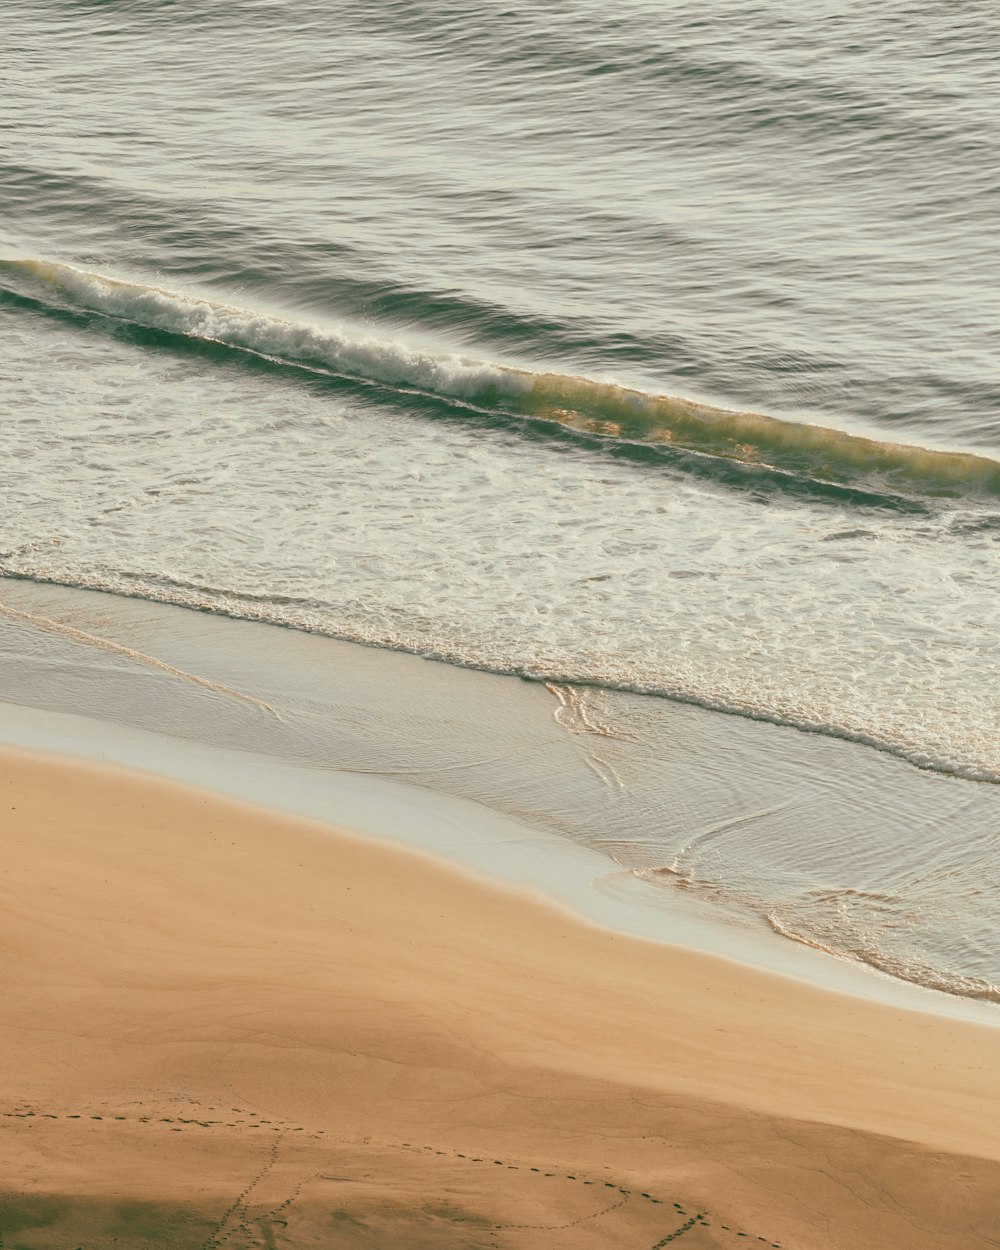 모래 사장 위에서 서핑보드를 타는 남자